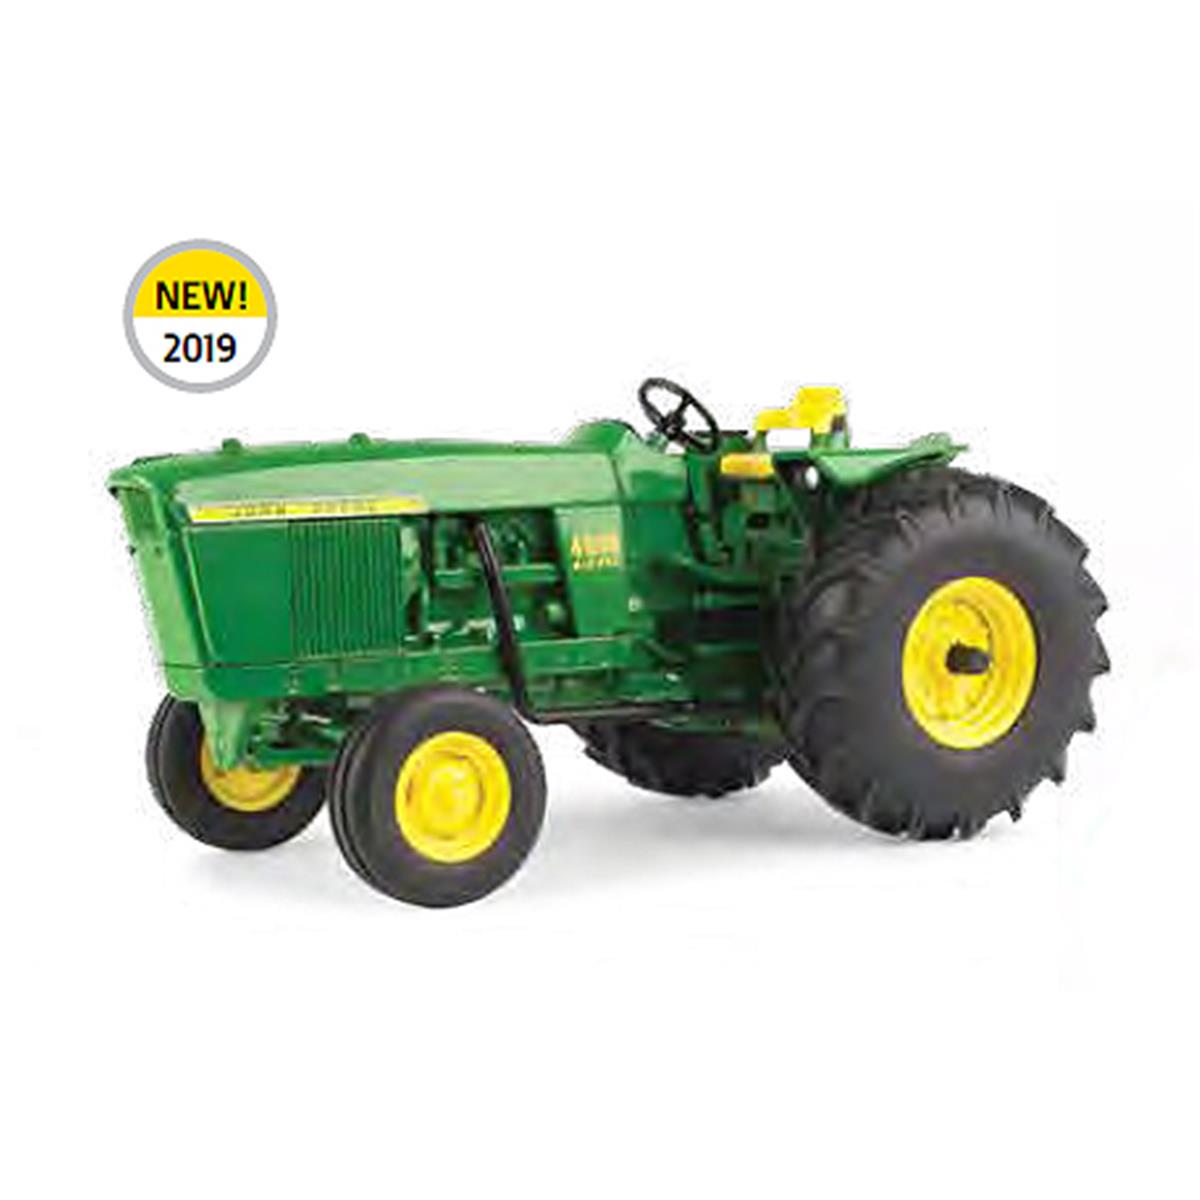 Ert45668 1 By 16 Scale John Deere 4000 Low Profile Tractor